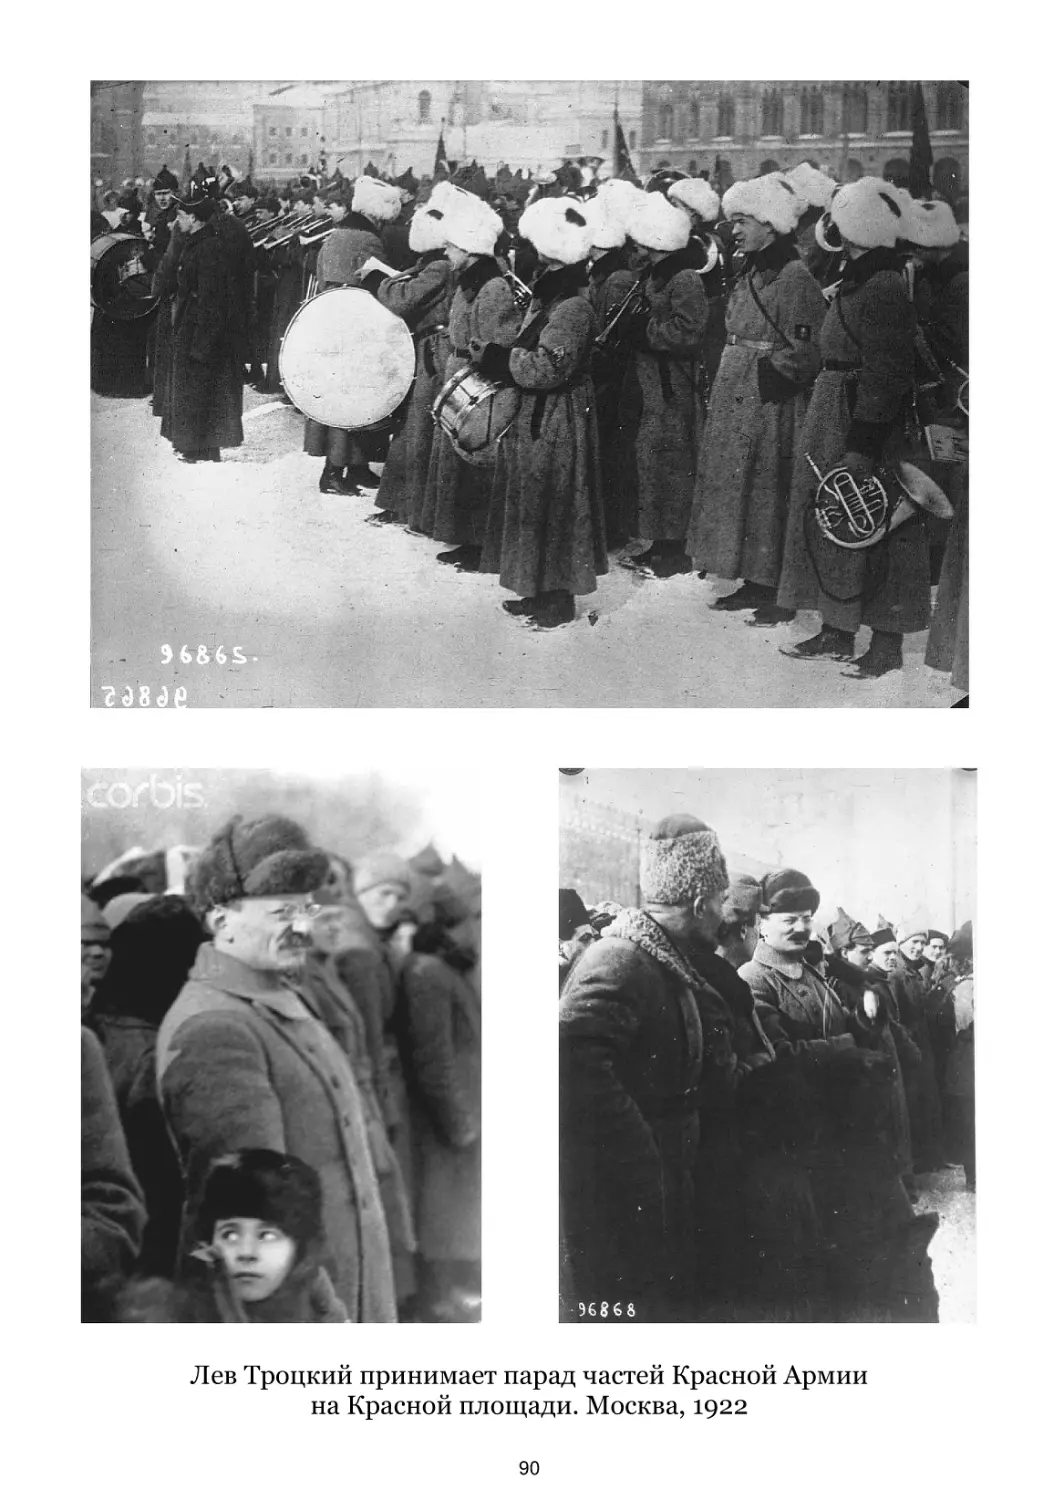 Лев Троцкий принимает парад частей Красной Армии. Москва, 1922